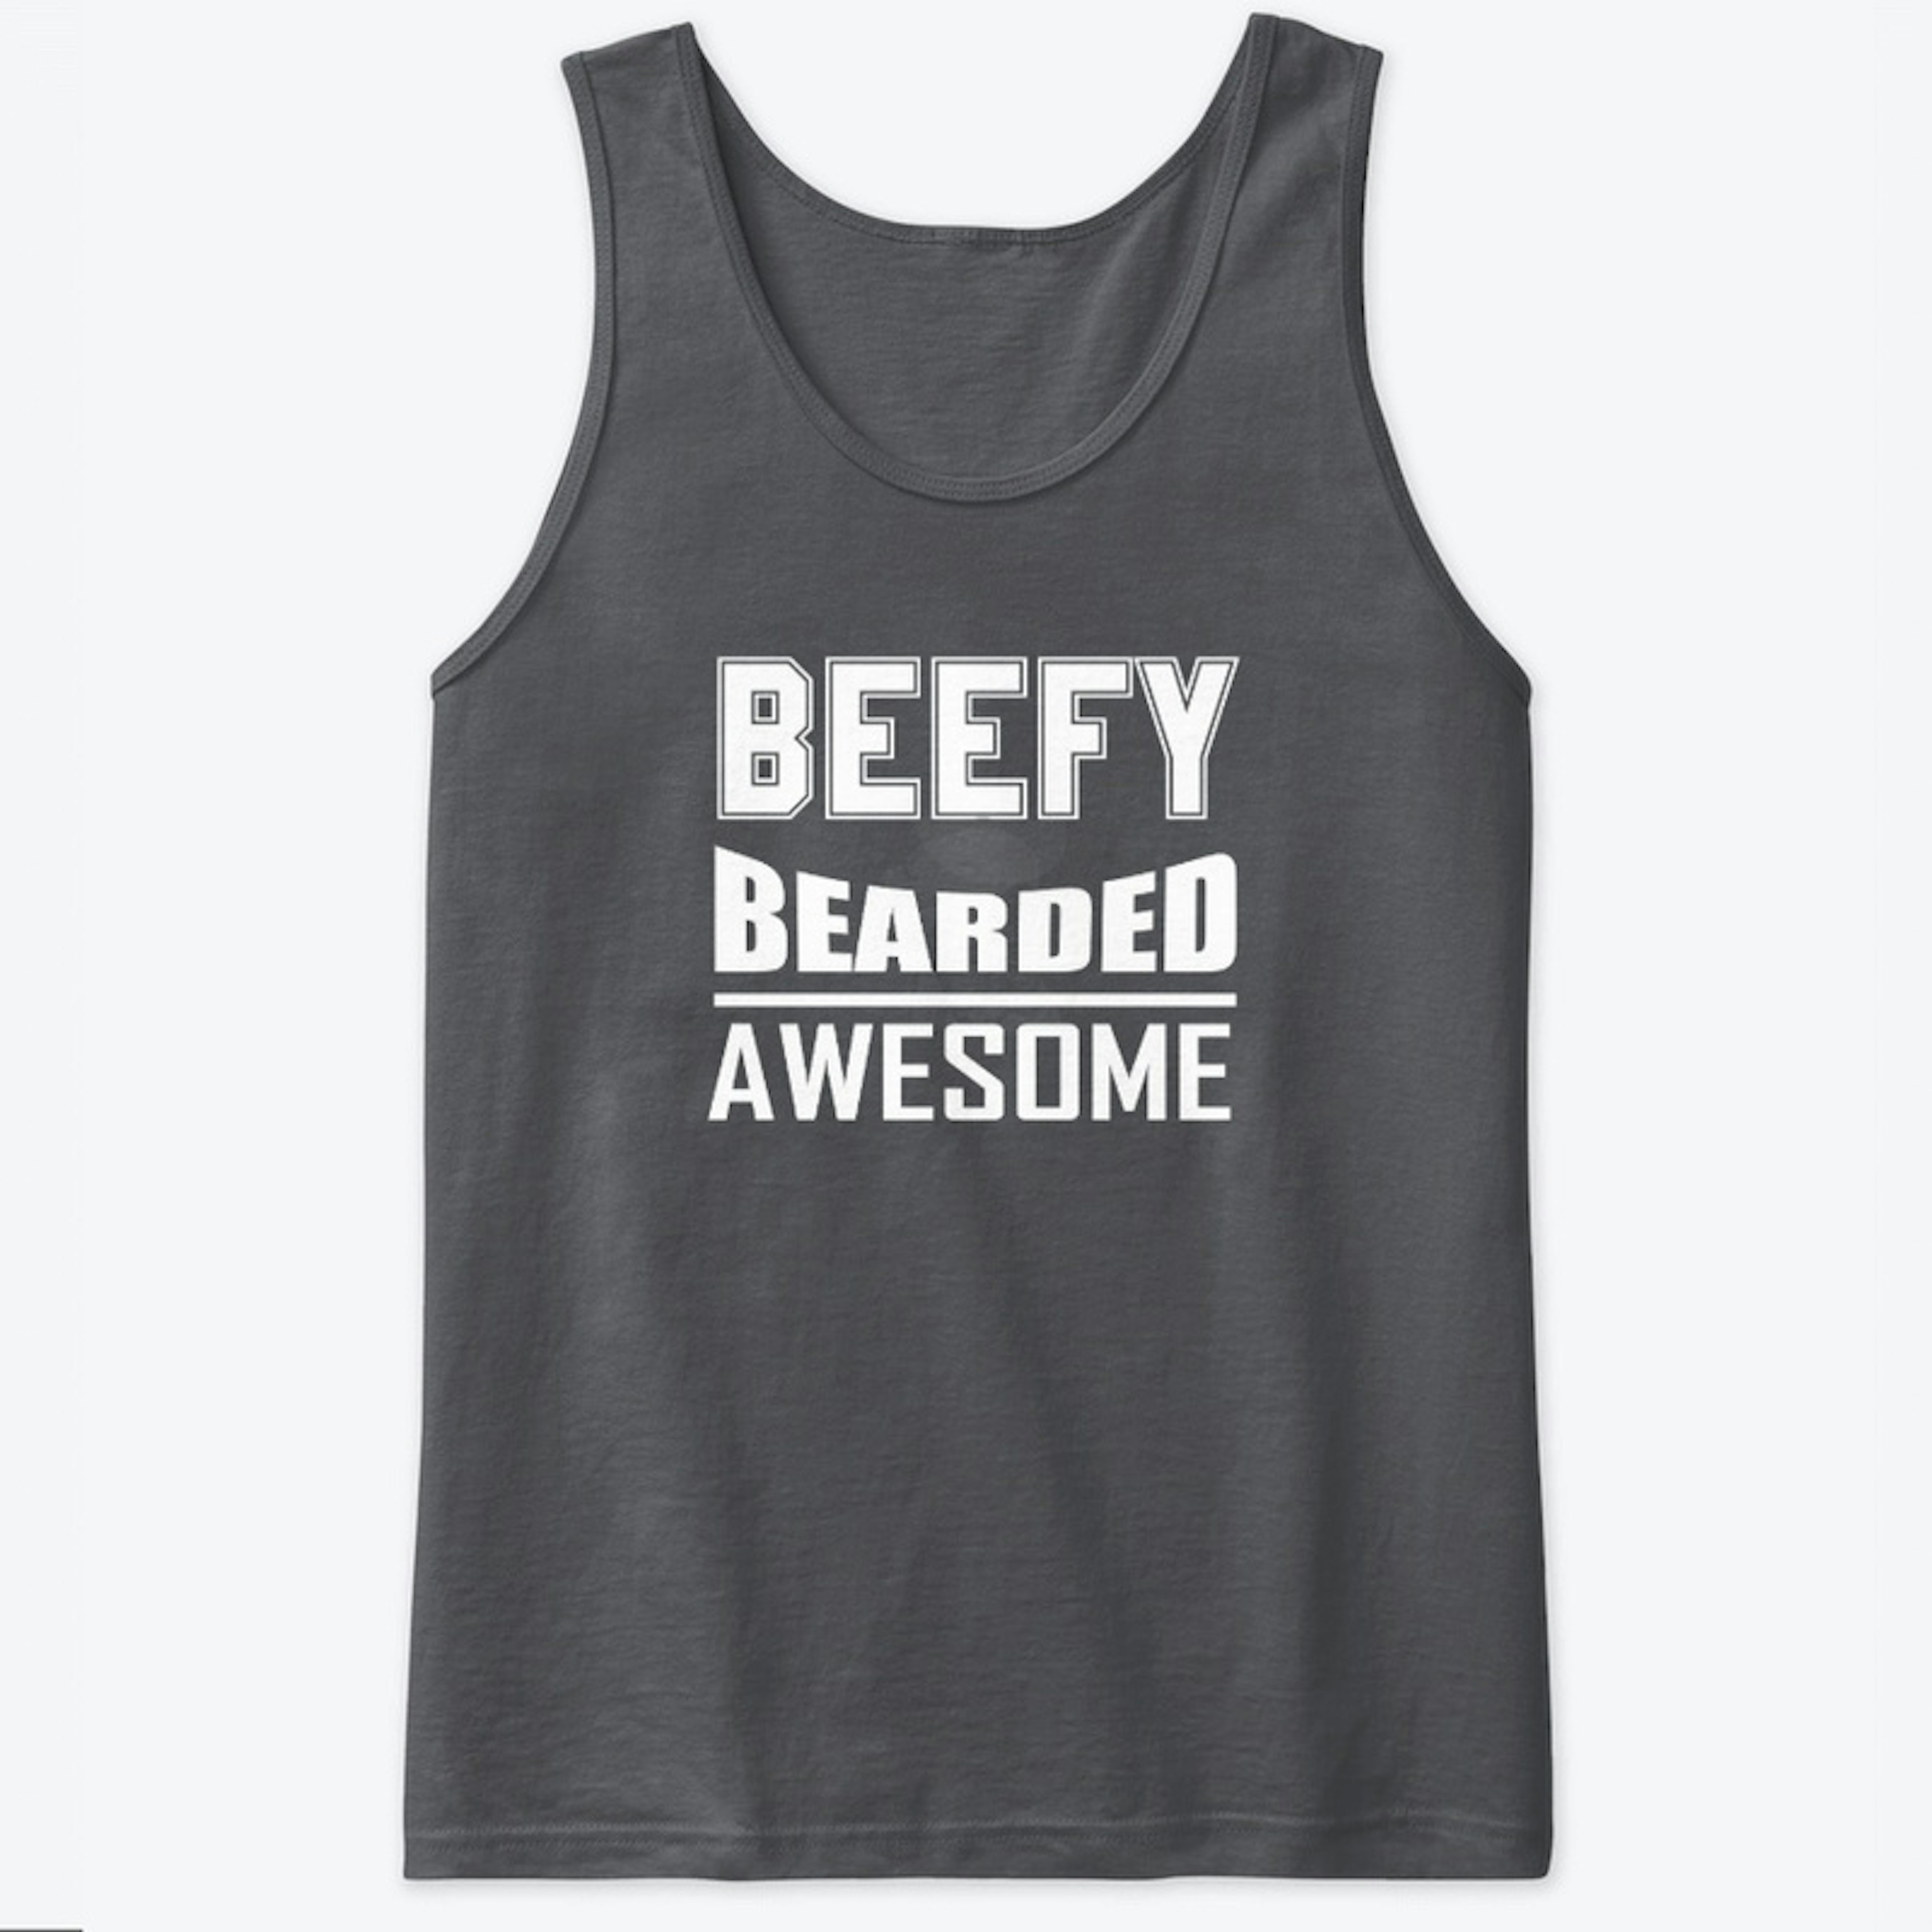 Beefy, Bearded, Awesome - Beard T-shirt